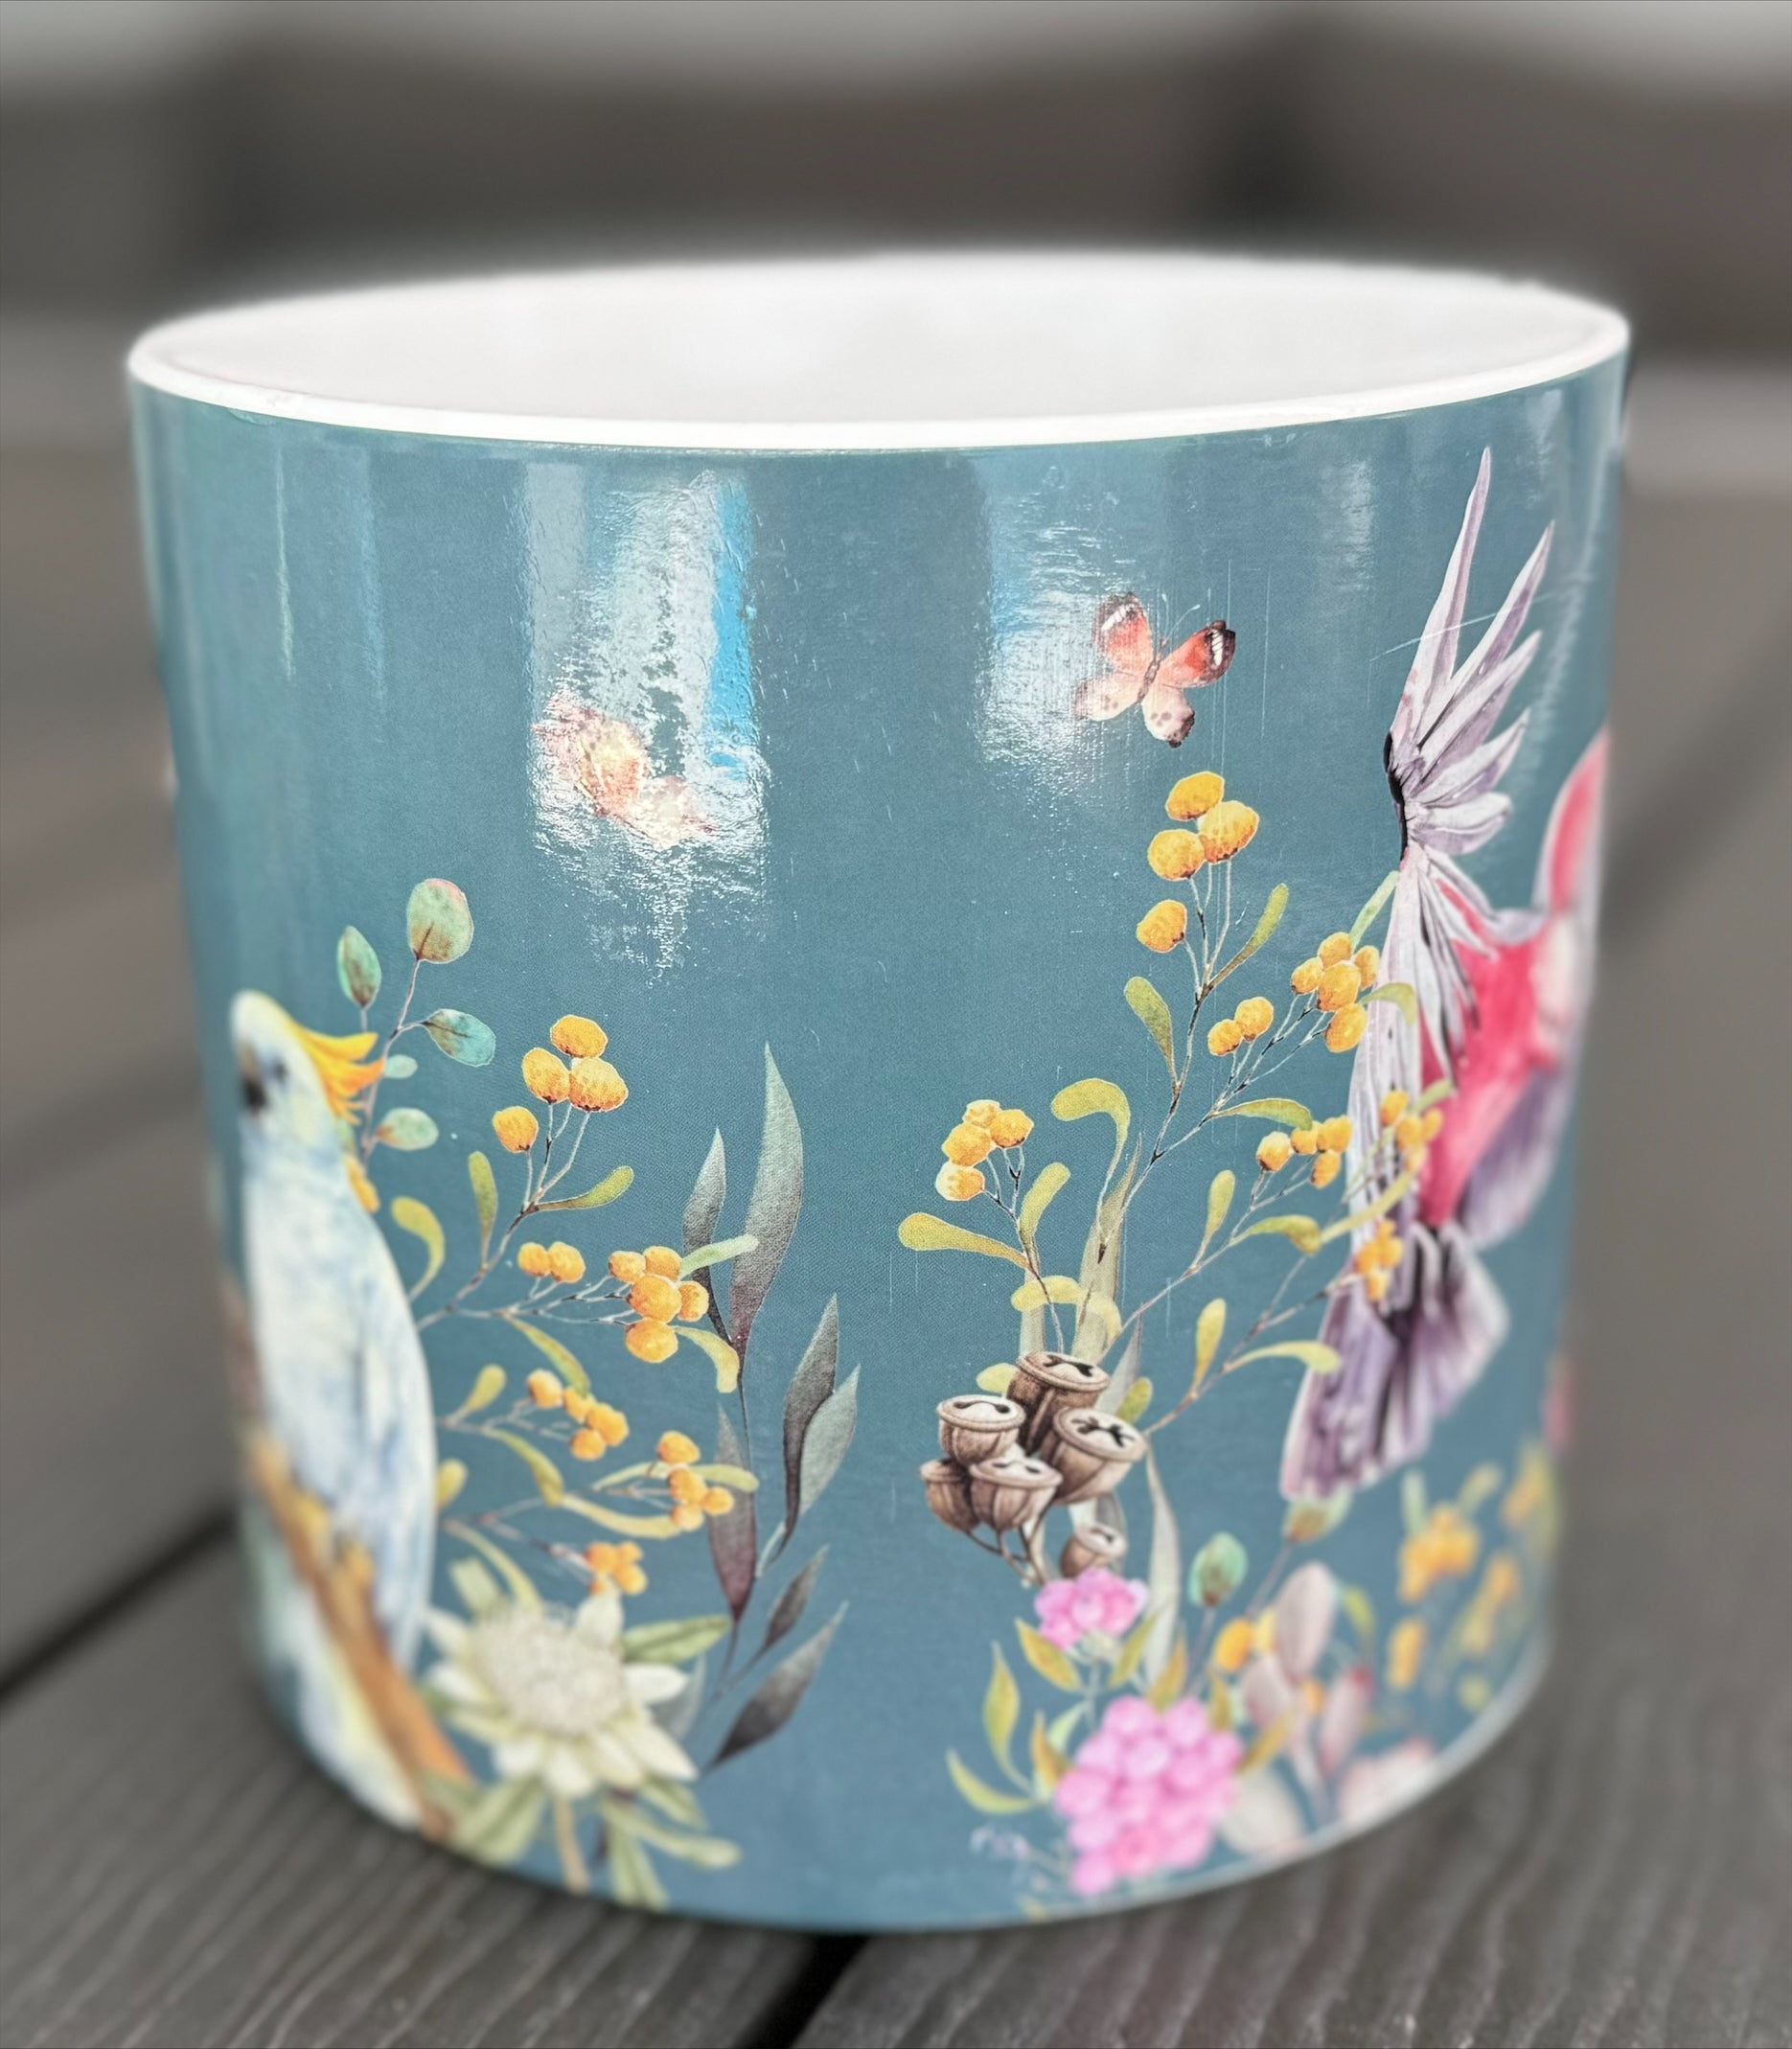 Native Flora & Fauna Ceramic Pot - 12.5cm Bright Designs